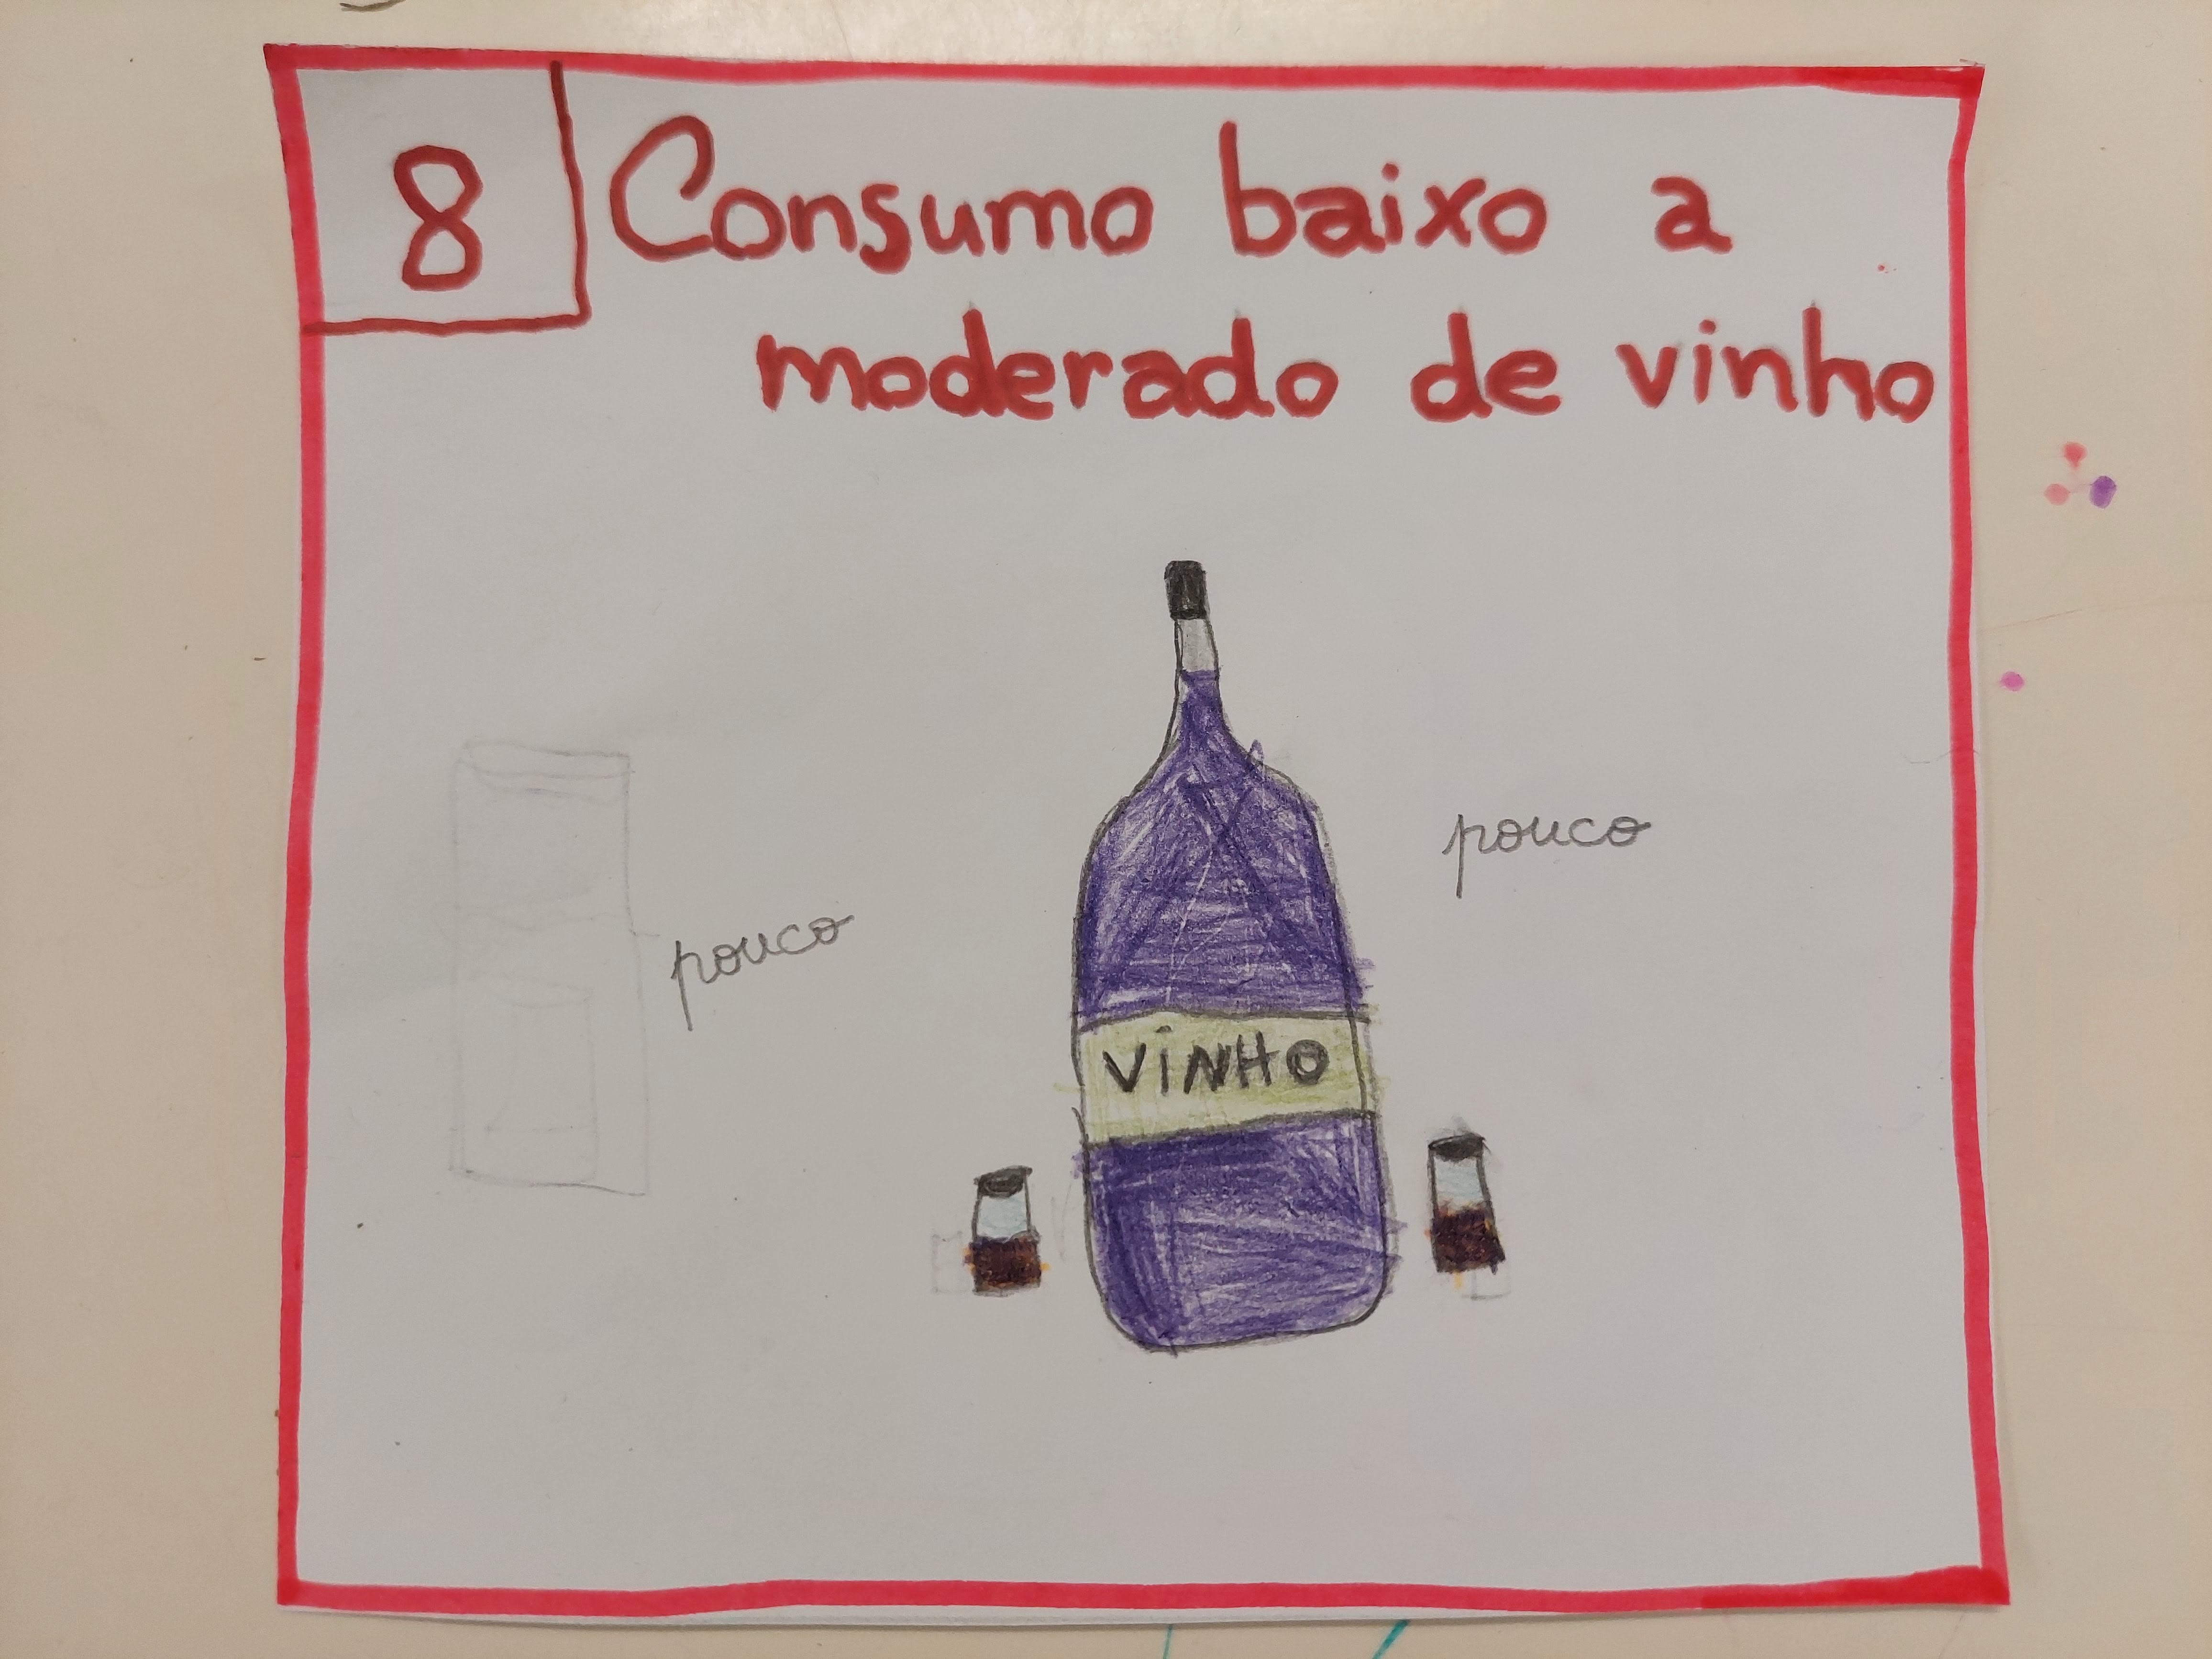 8 - Consumo baixo a moderado de vinho